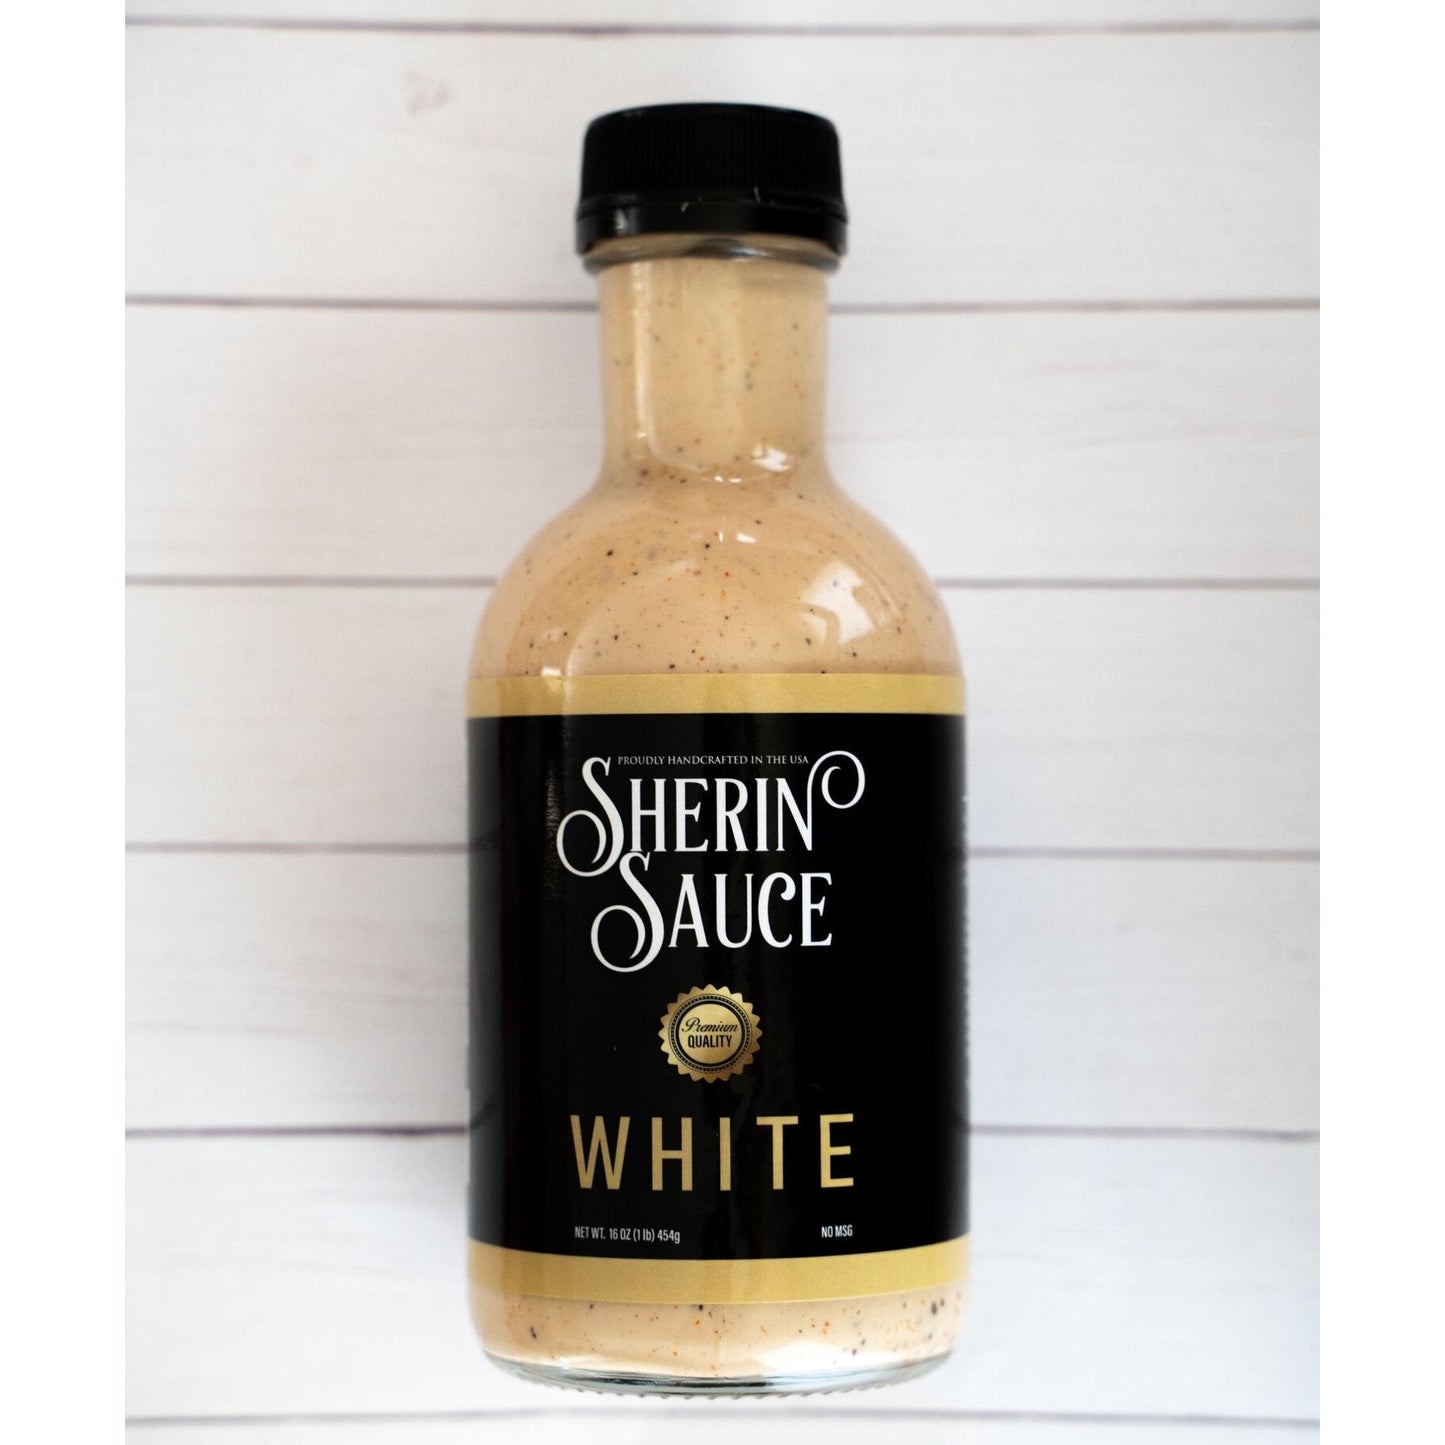 Sherin White Sauce 12oz